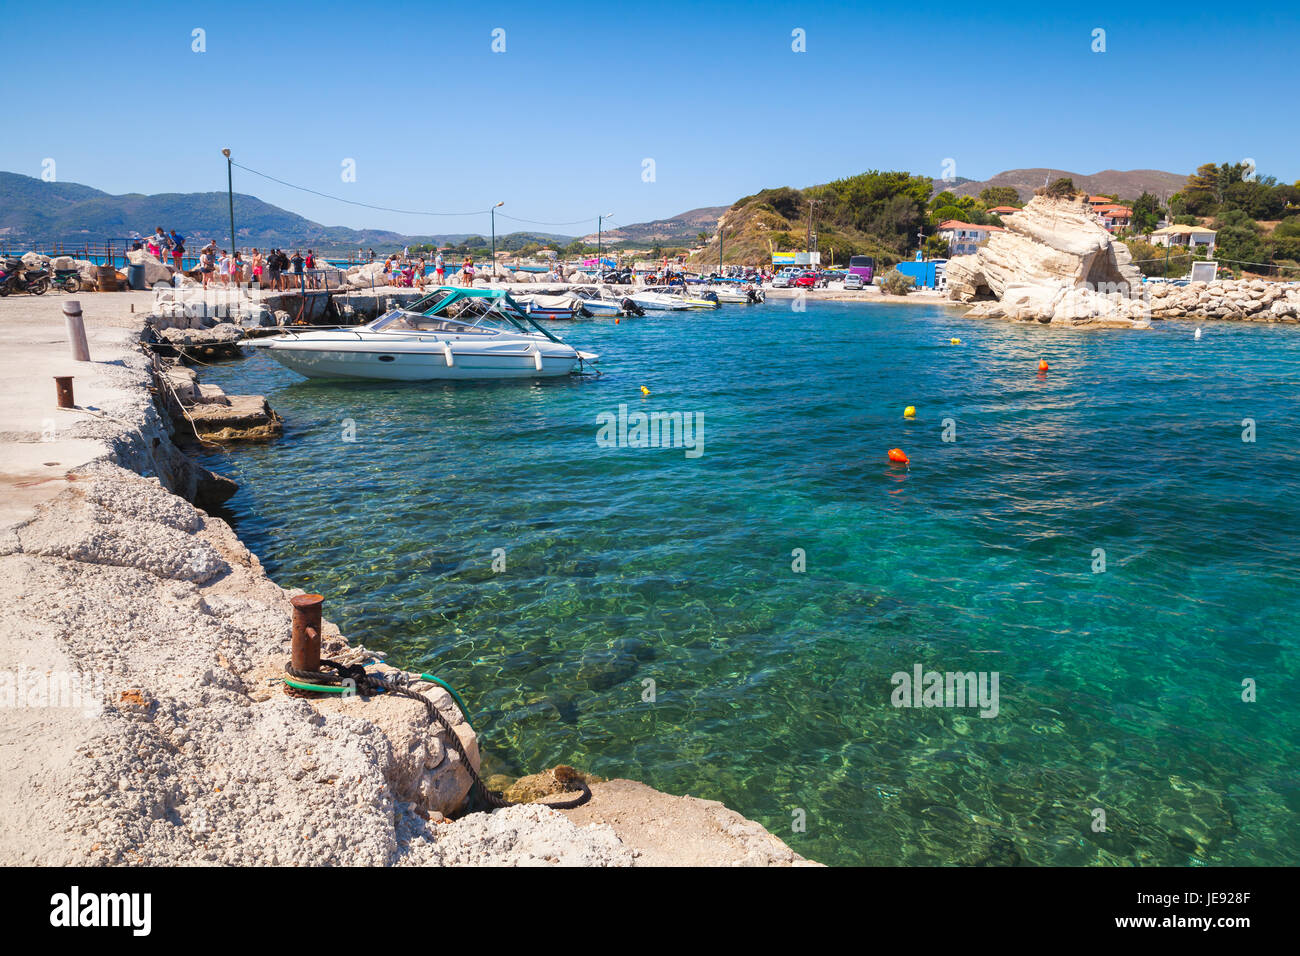 Paysage d''Agios Sostis. L'île de Zakynthos, Grèce. Destination touristique populaire pour les vacances d'été Banque D'Images